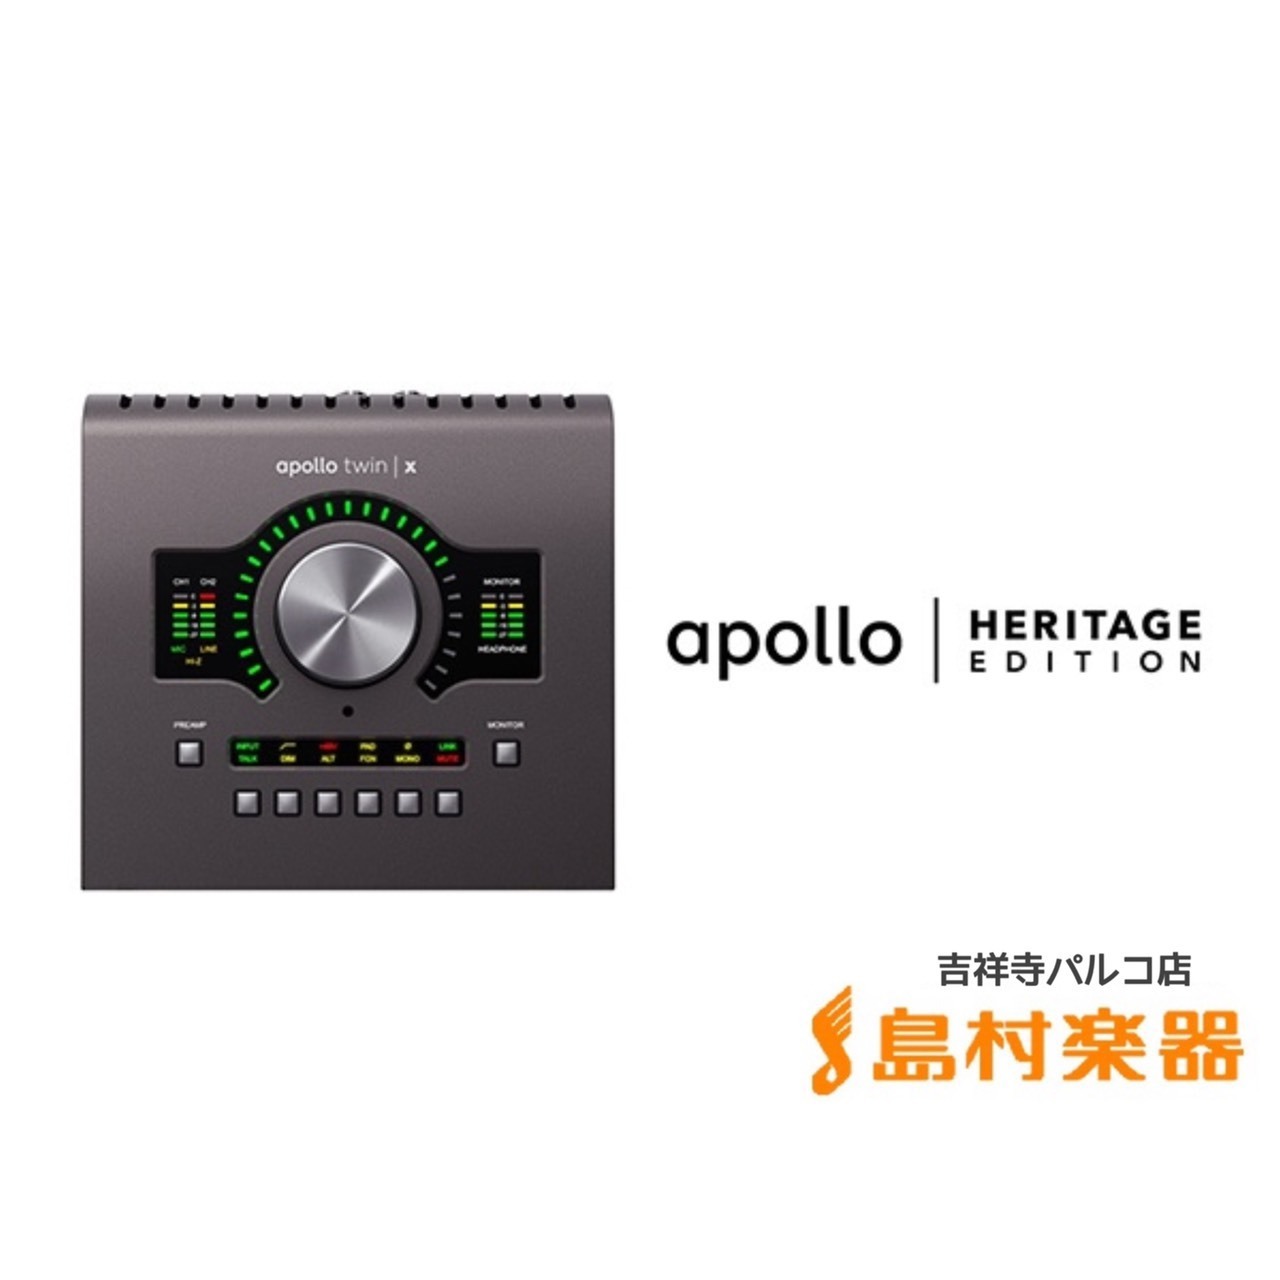 シーリングライト UNIVERSAL AUDIO/Apollo Twin X Duo Heritage